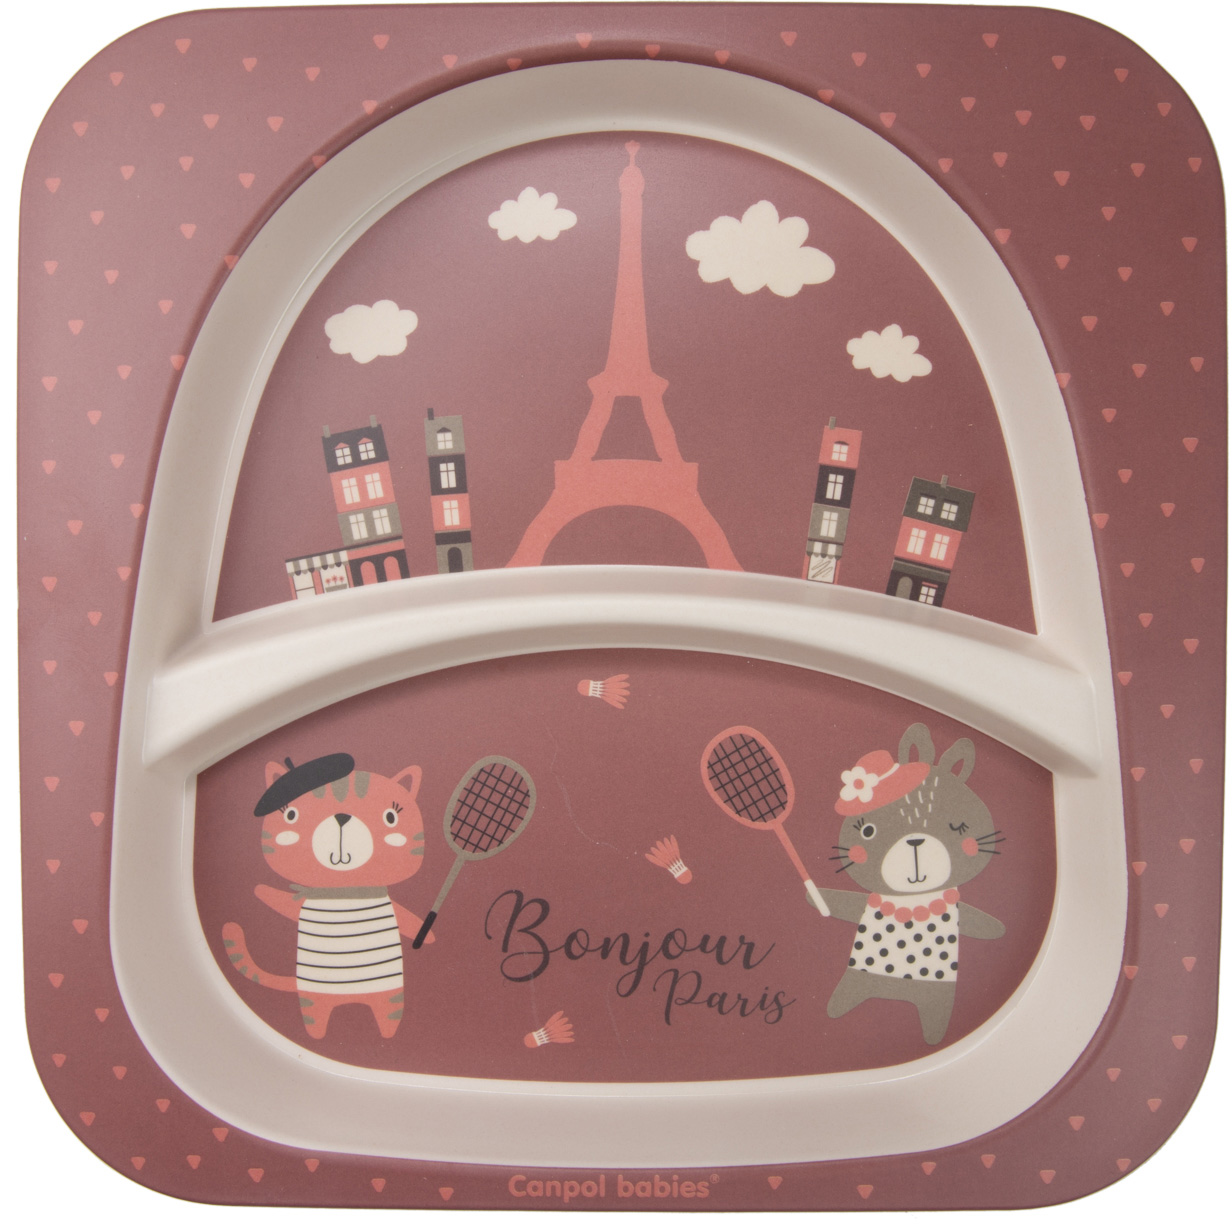 Набор посуды Canpol babies Bonjour Paris, 5 предметов, красный (9/227_red) - фото 3